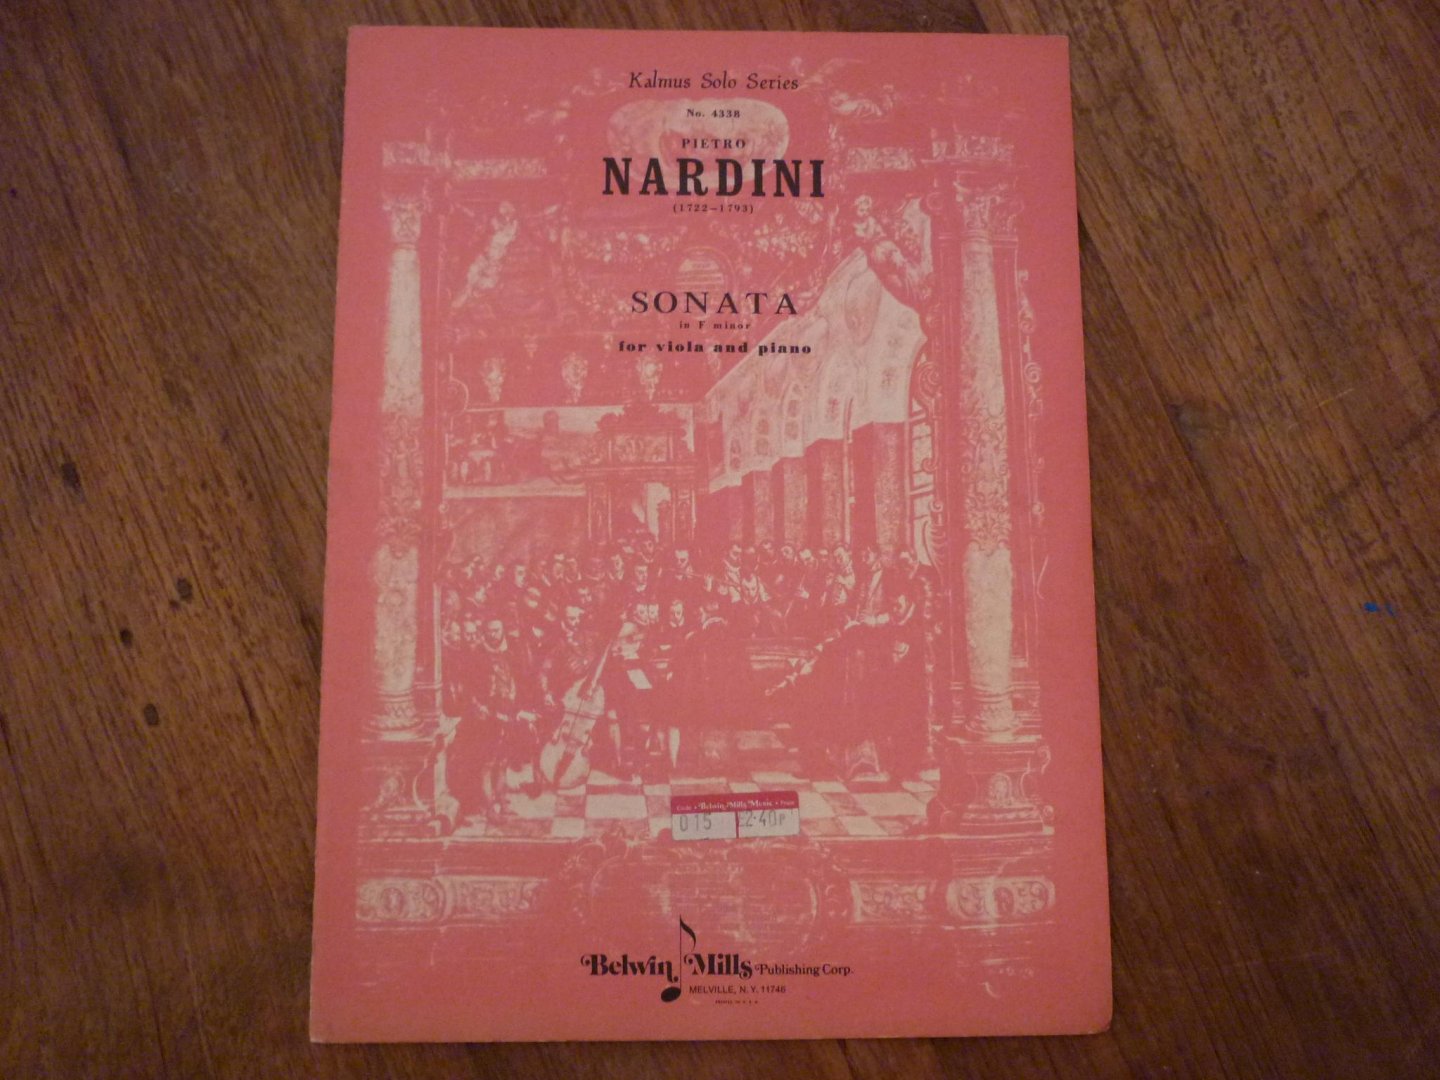 Nardini; Pietro (1722–1793) - Sonata in F minor; for Viola and Piano / Kalmus Solo Series No. 4338